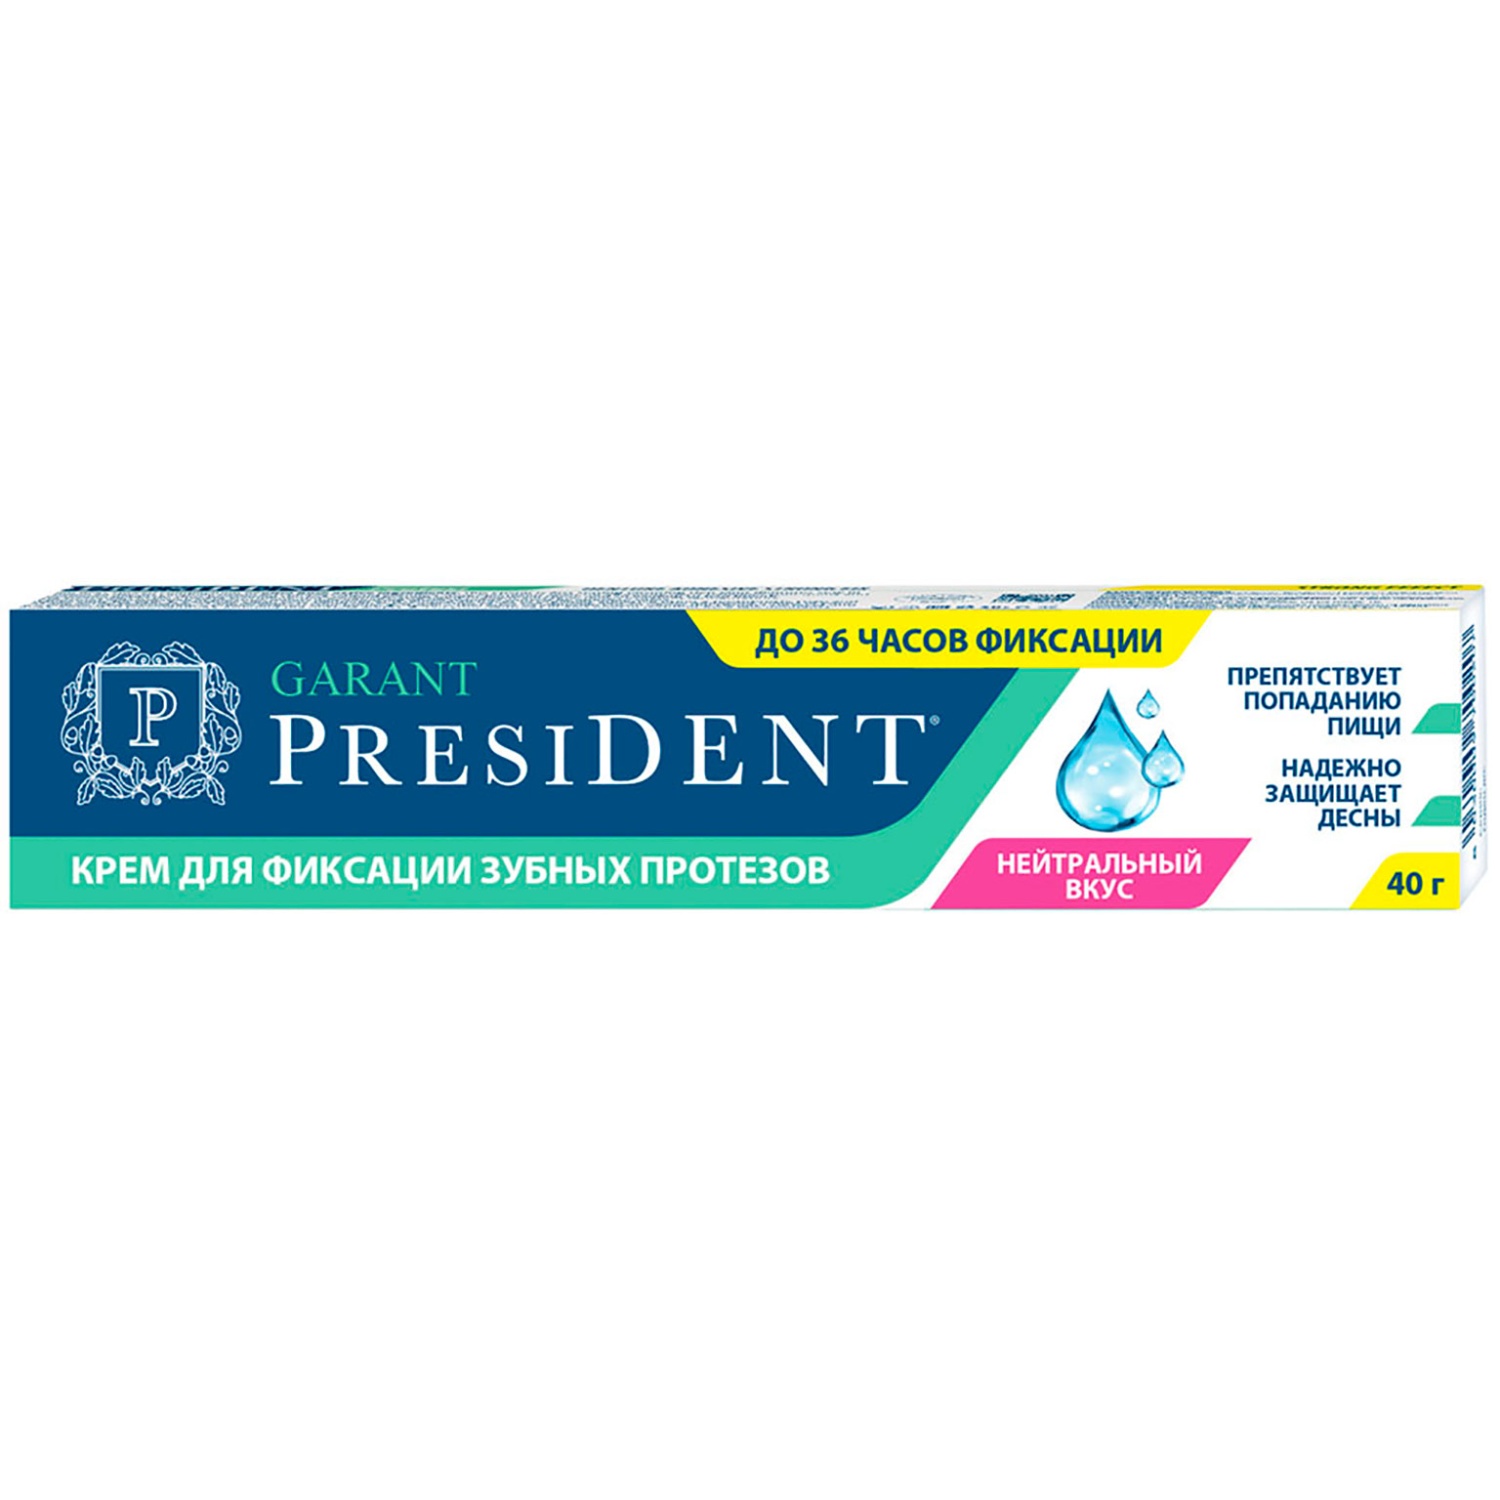 Крем для фиксации зубных протезов PRESIDENT Garant 40 г нейтральный вкус 